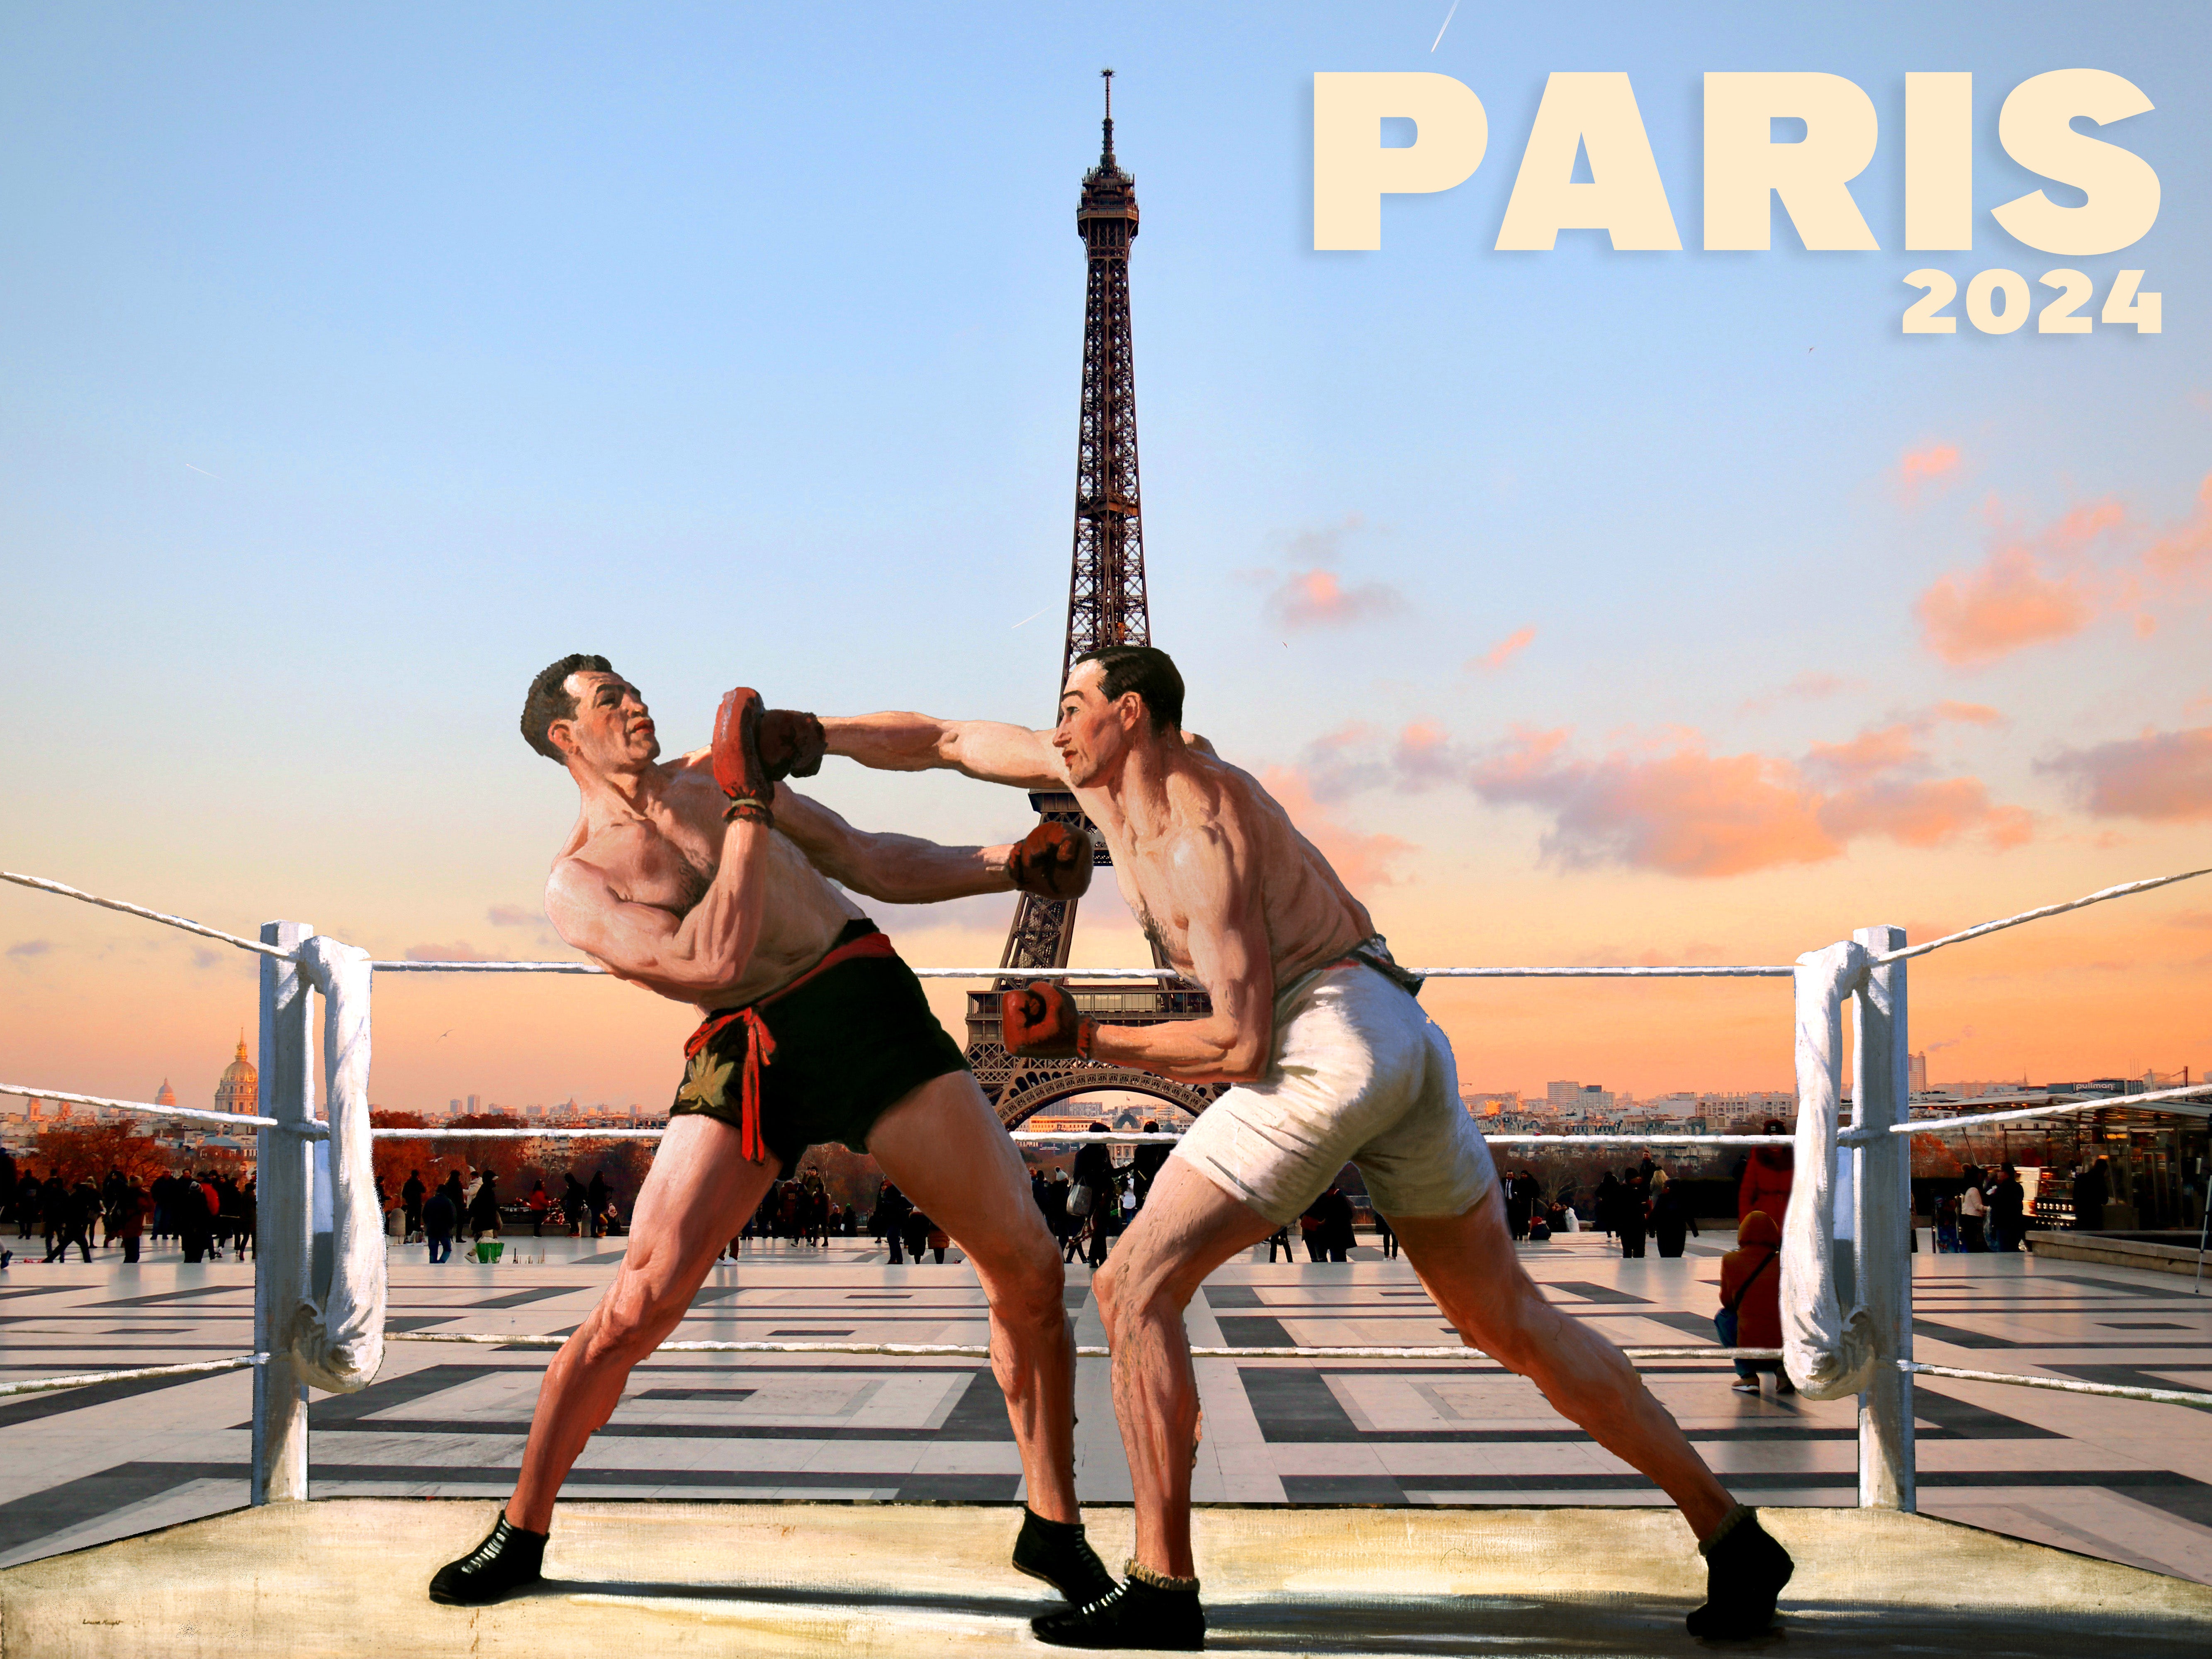 Boxeur de Laura Knight devant la tour Eiffel, Paris